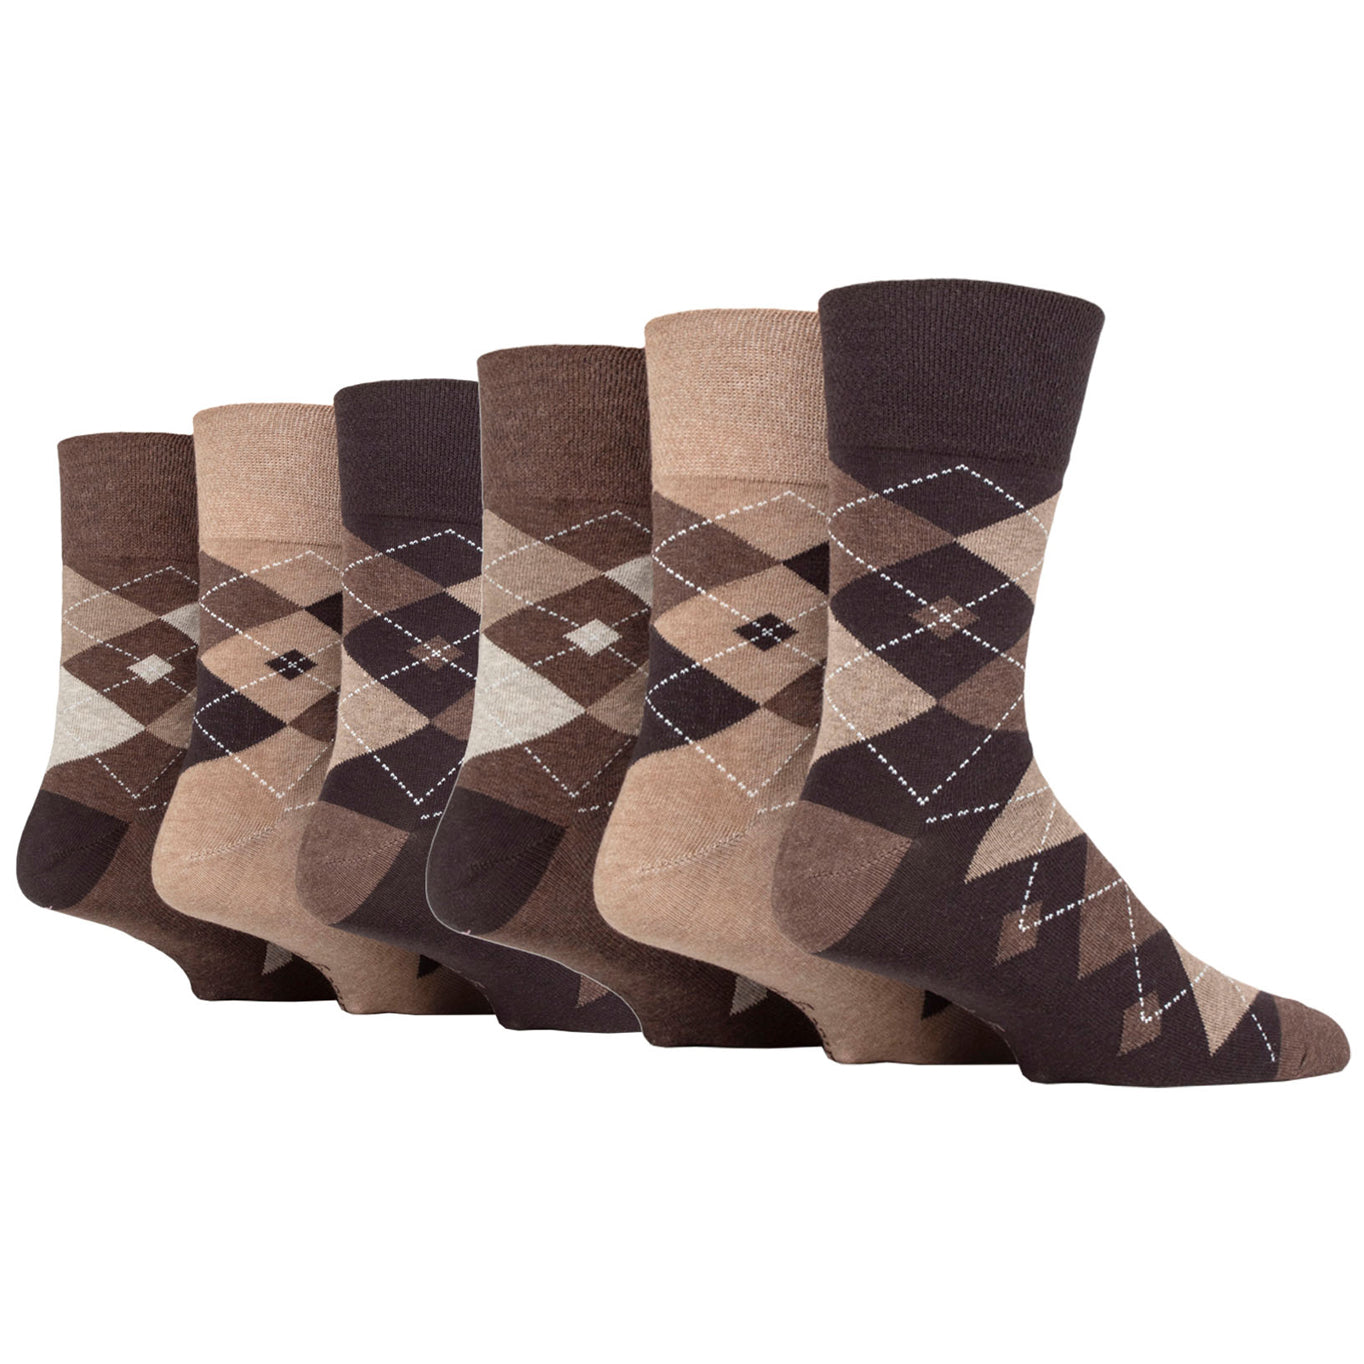 6 Pairs Men's Gentle Grip Cotton Socks Leven Argyle Brown/Natural